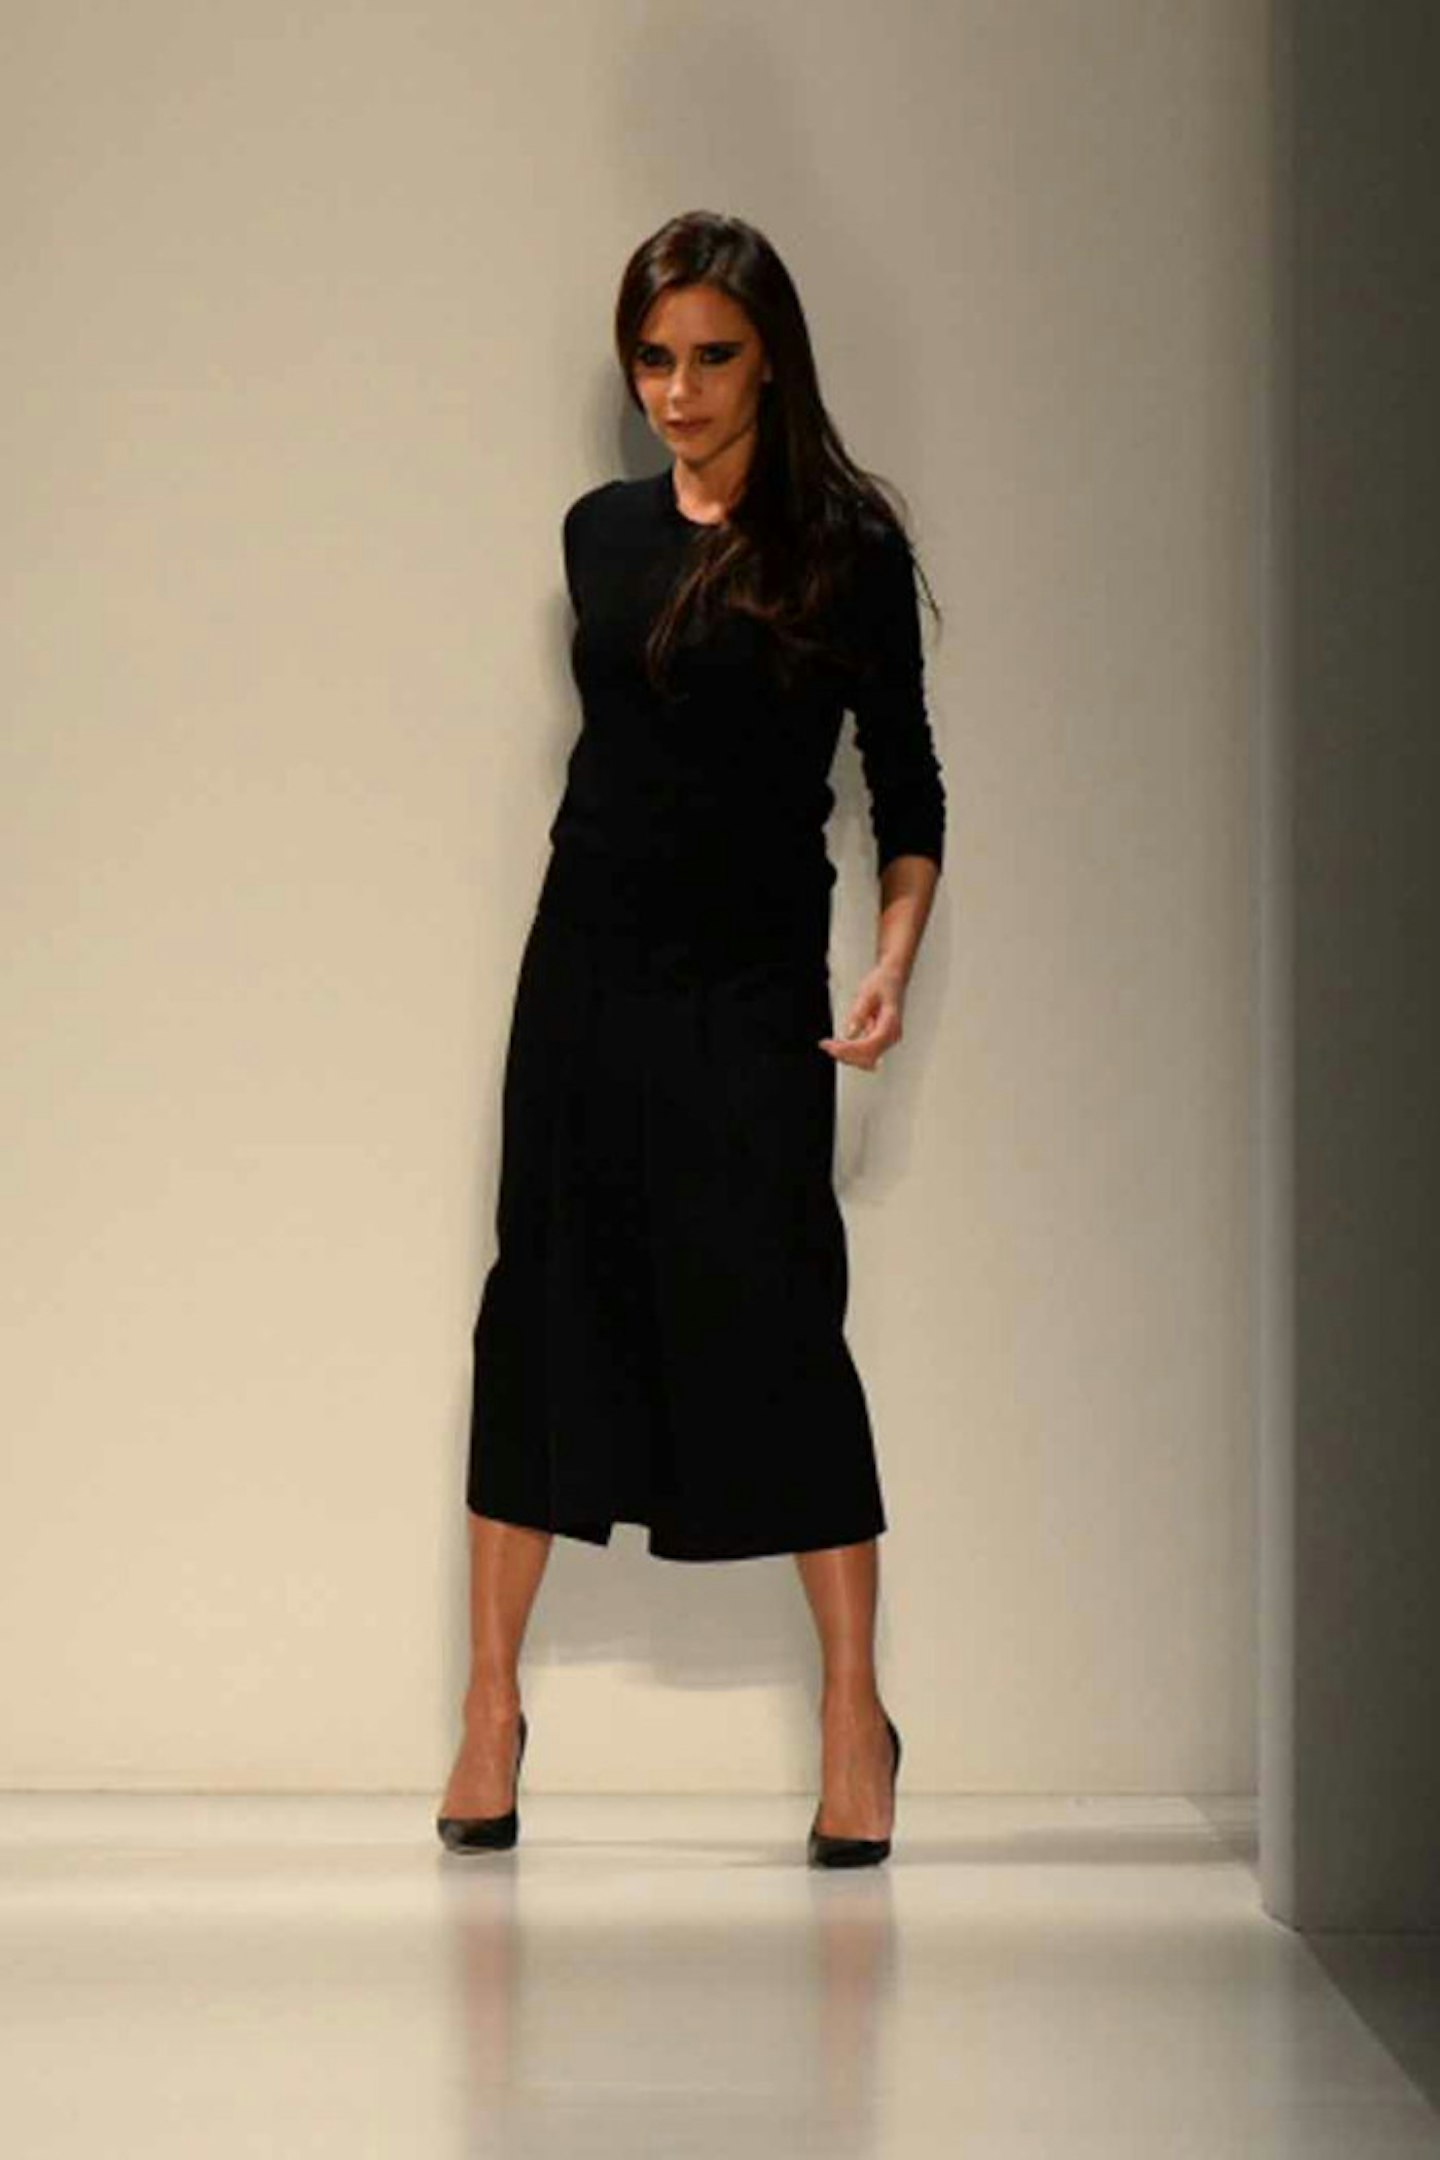 Victoria Beckham style new york fashion week 2014